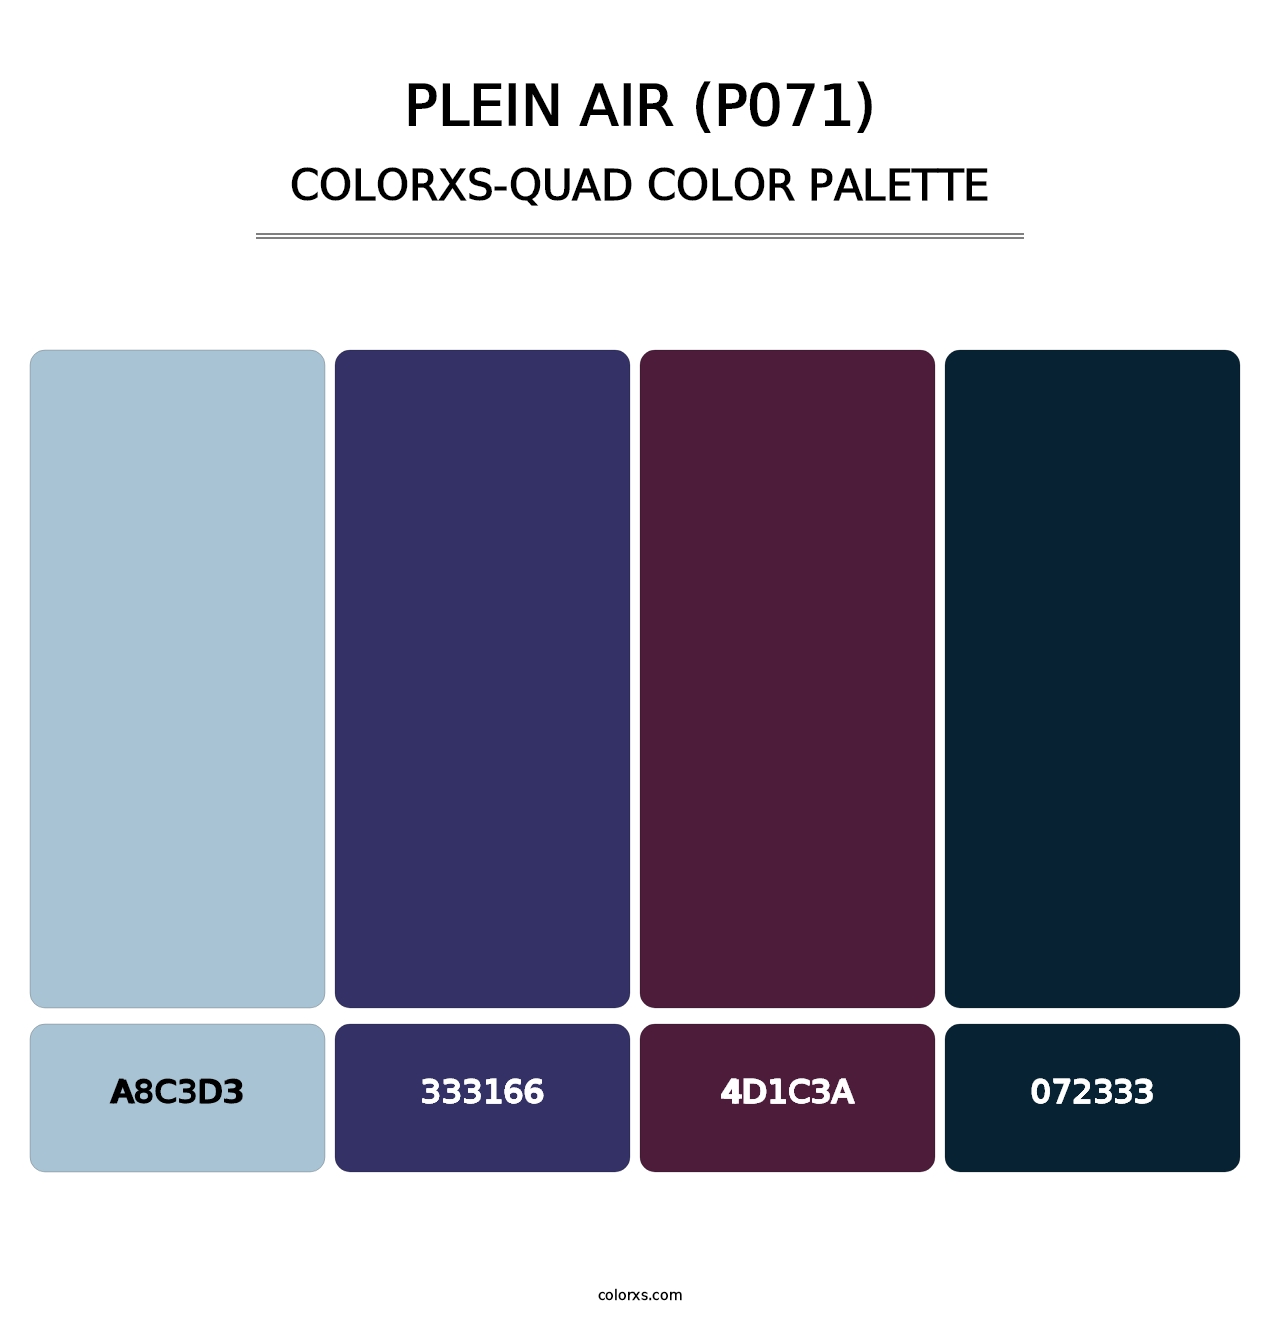 Plein Air (P071) - Colorxs Quad Palette